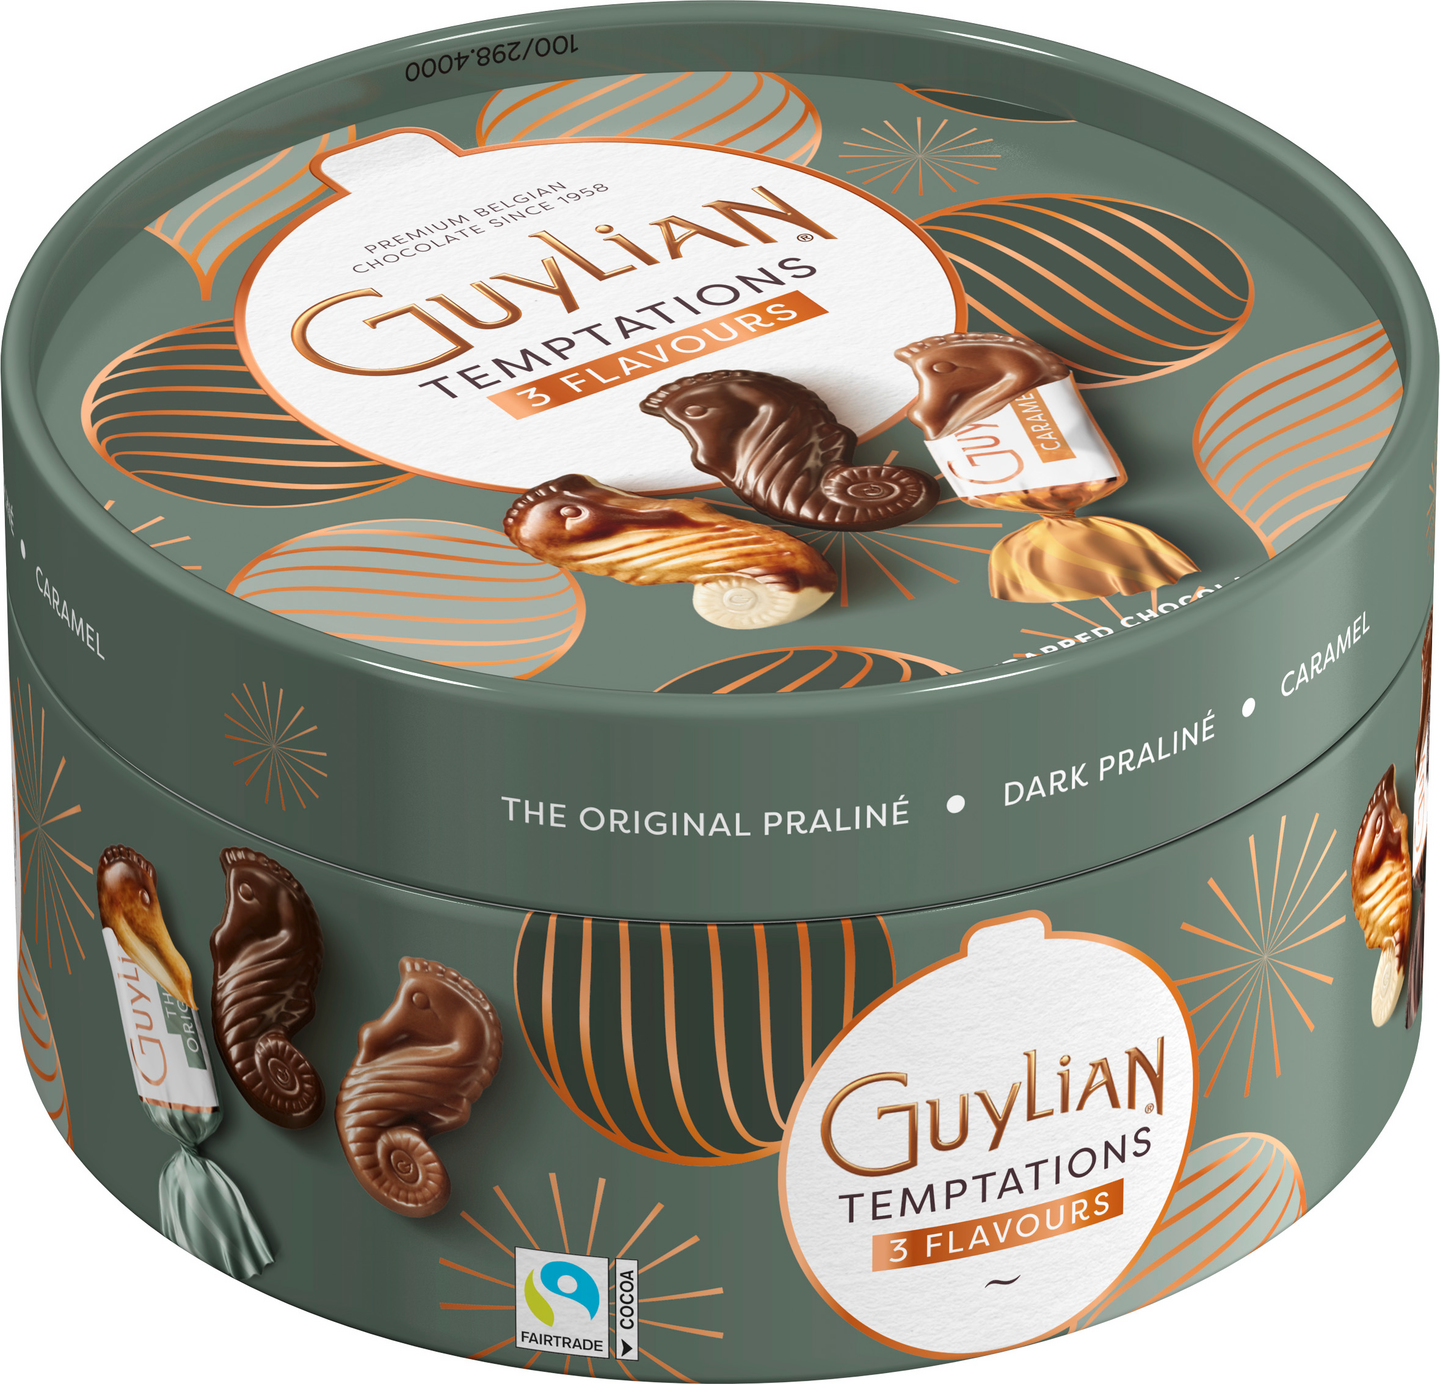 GuyLian Temptations Mix belgialaisia suklaakonvehteja 175g